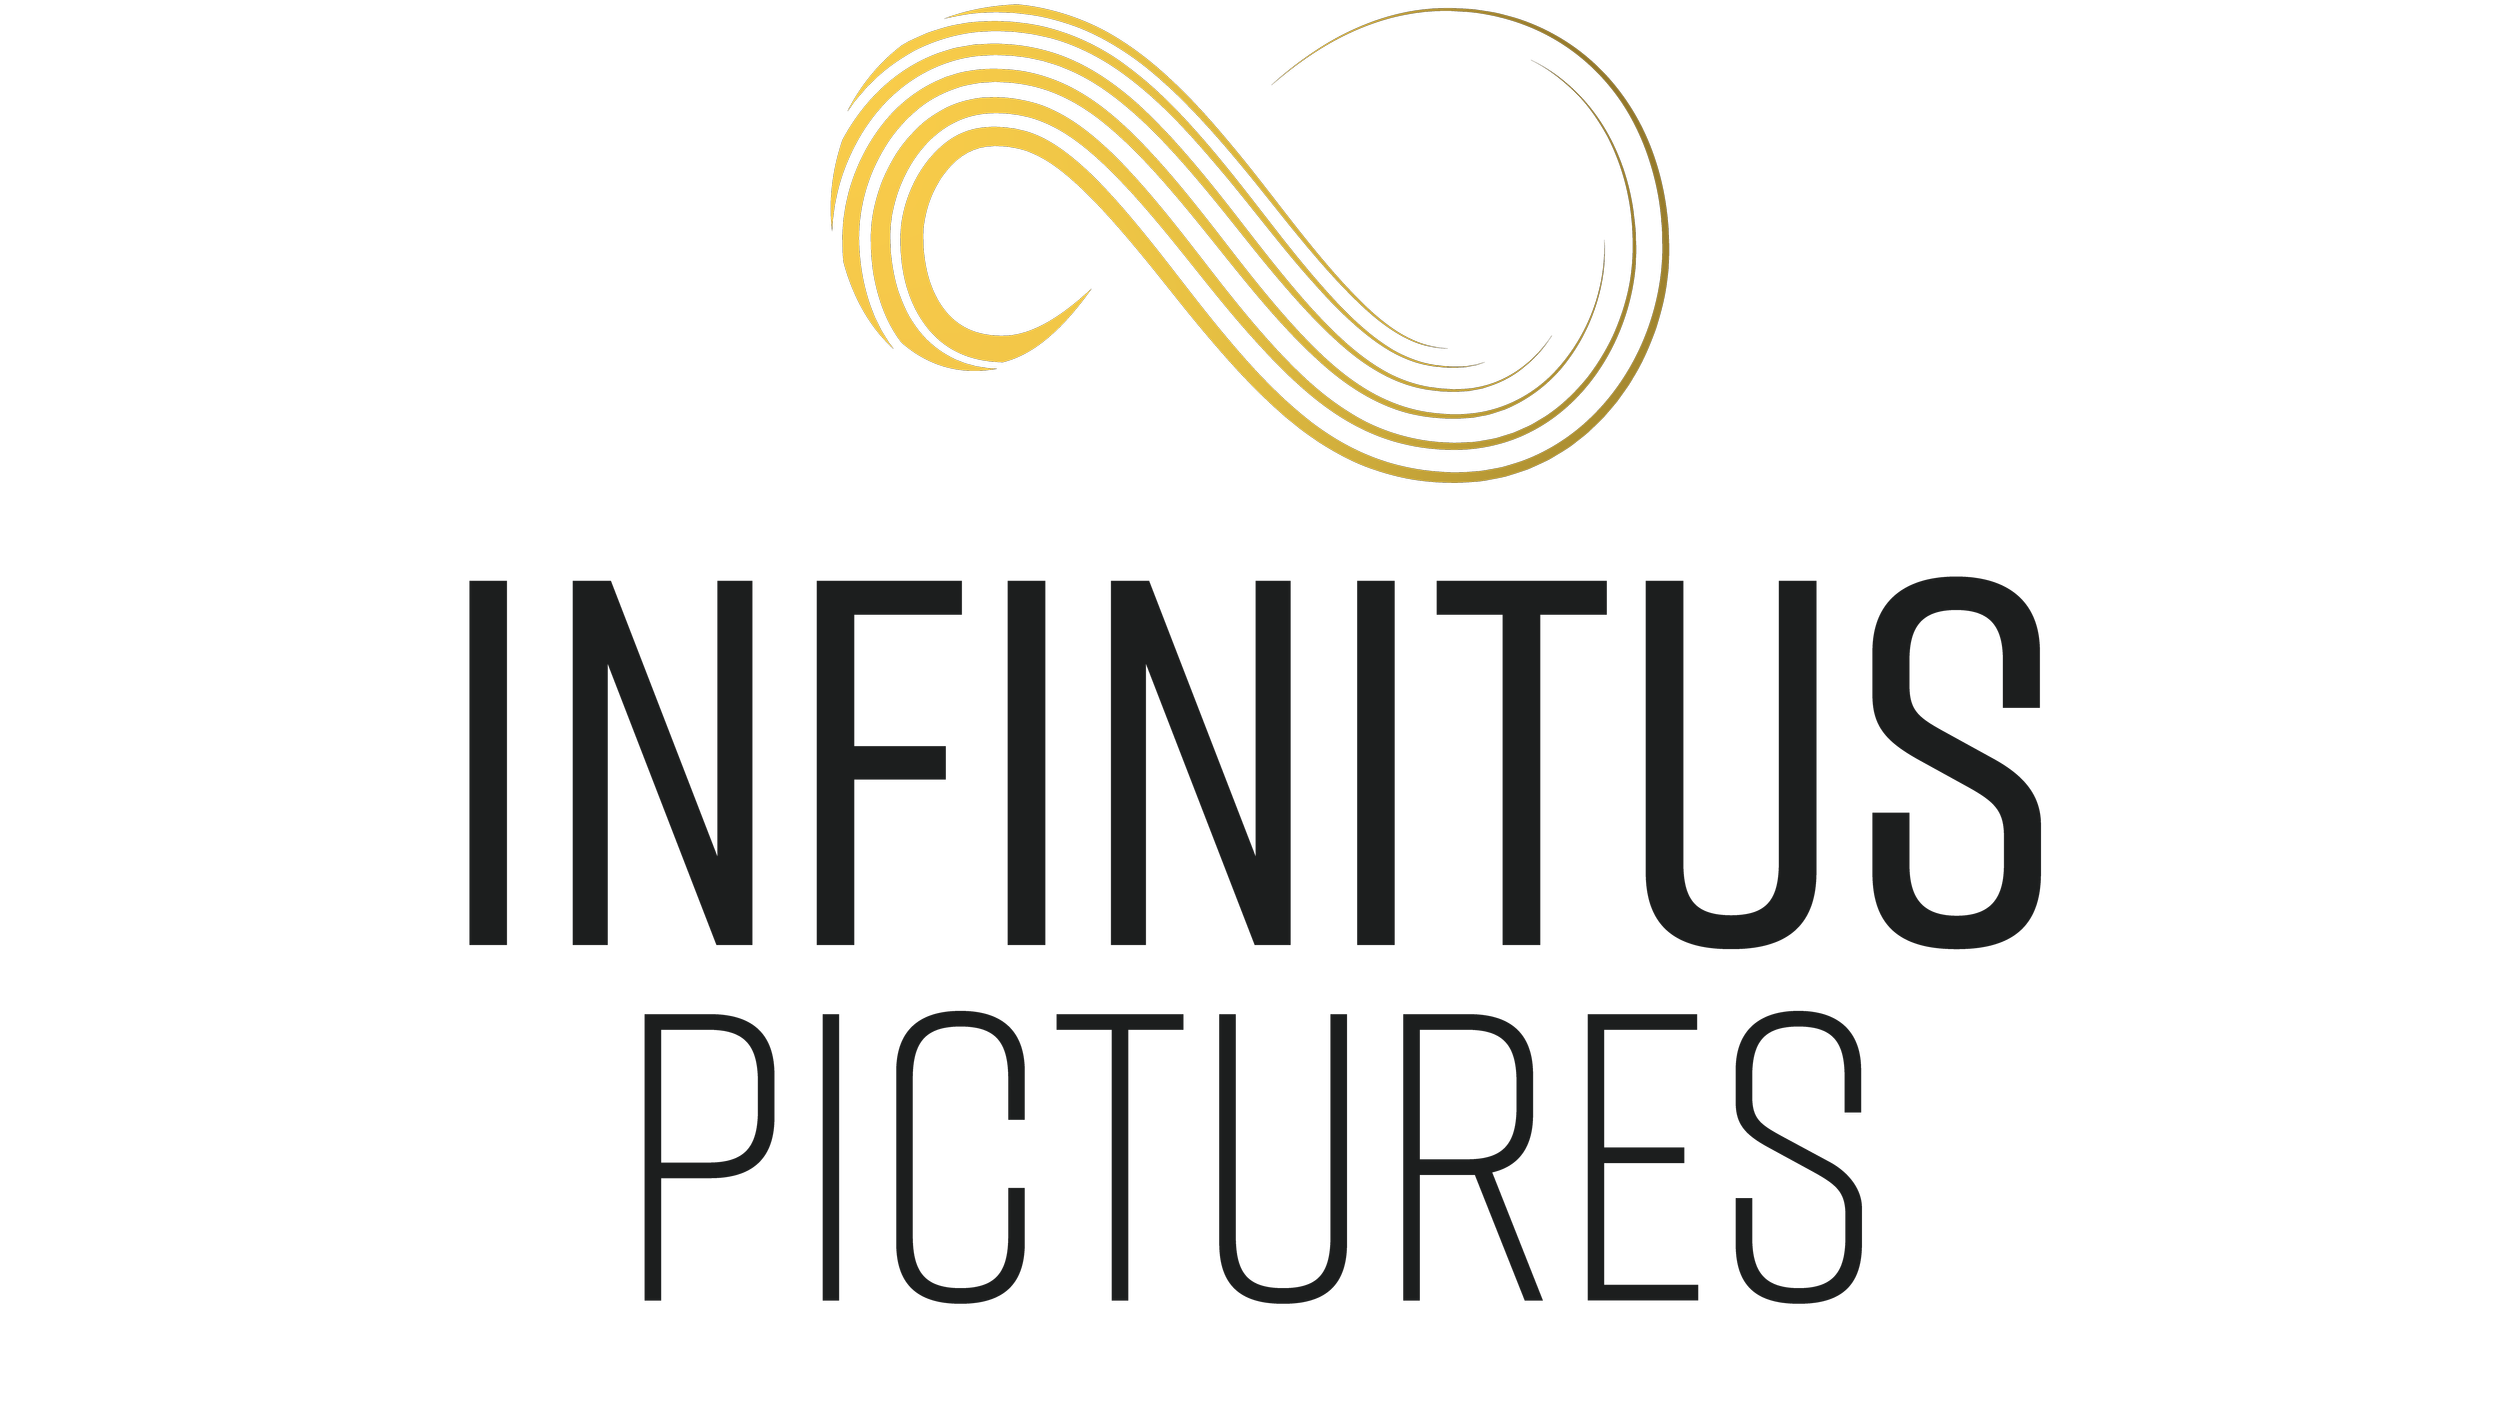 Infinitus Pictures